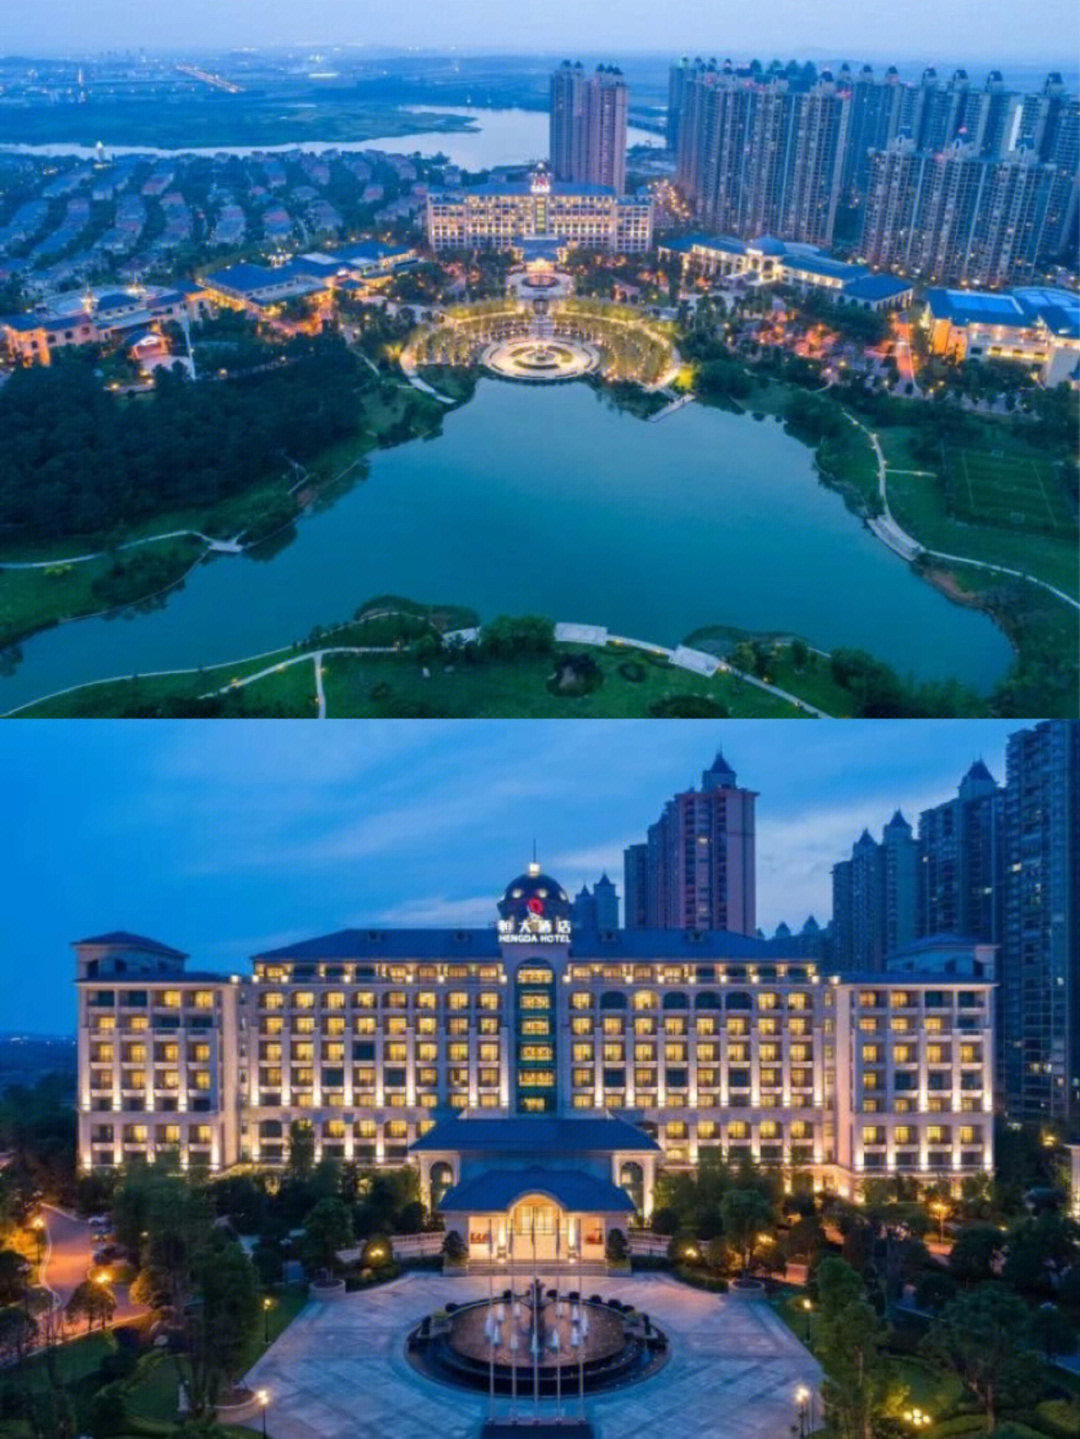 下榻欧式城堡度假499南京恒大酒店